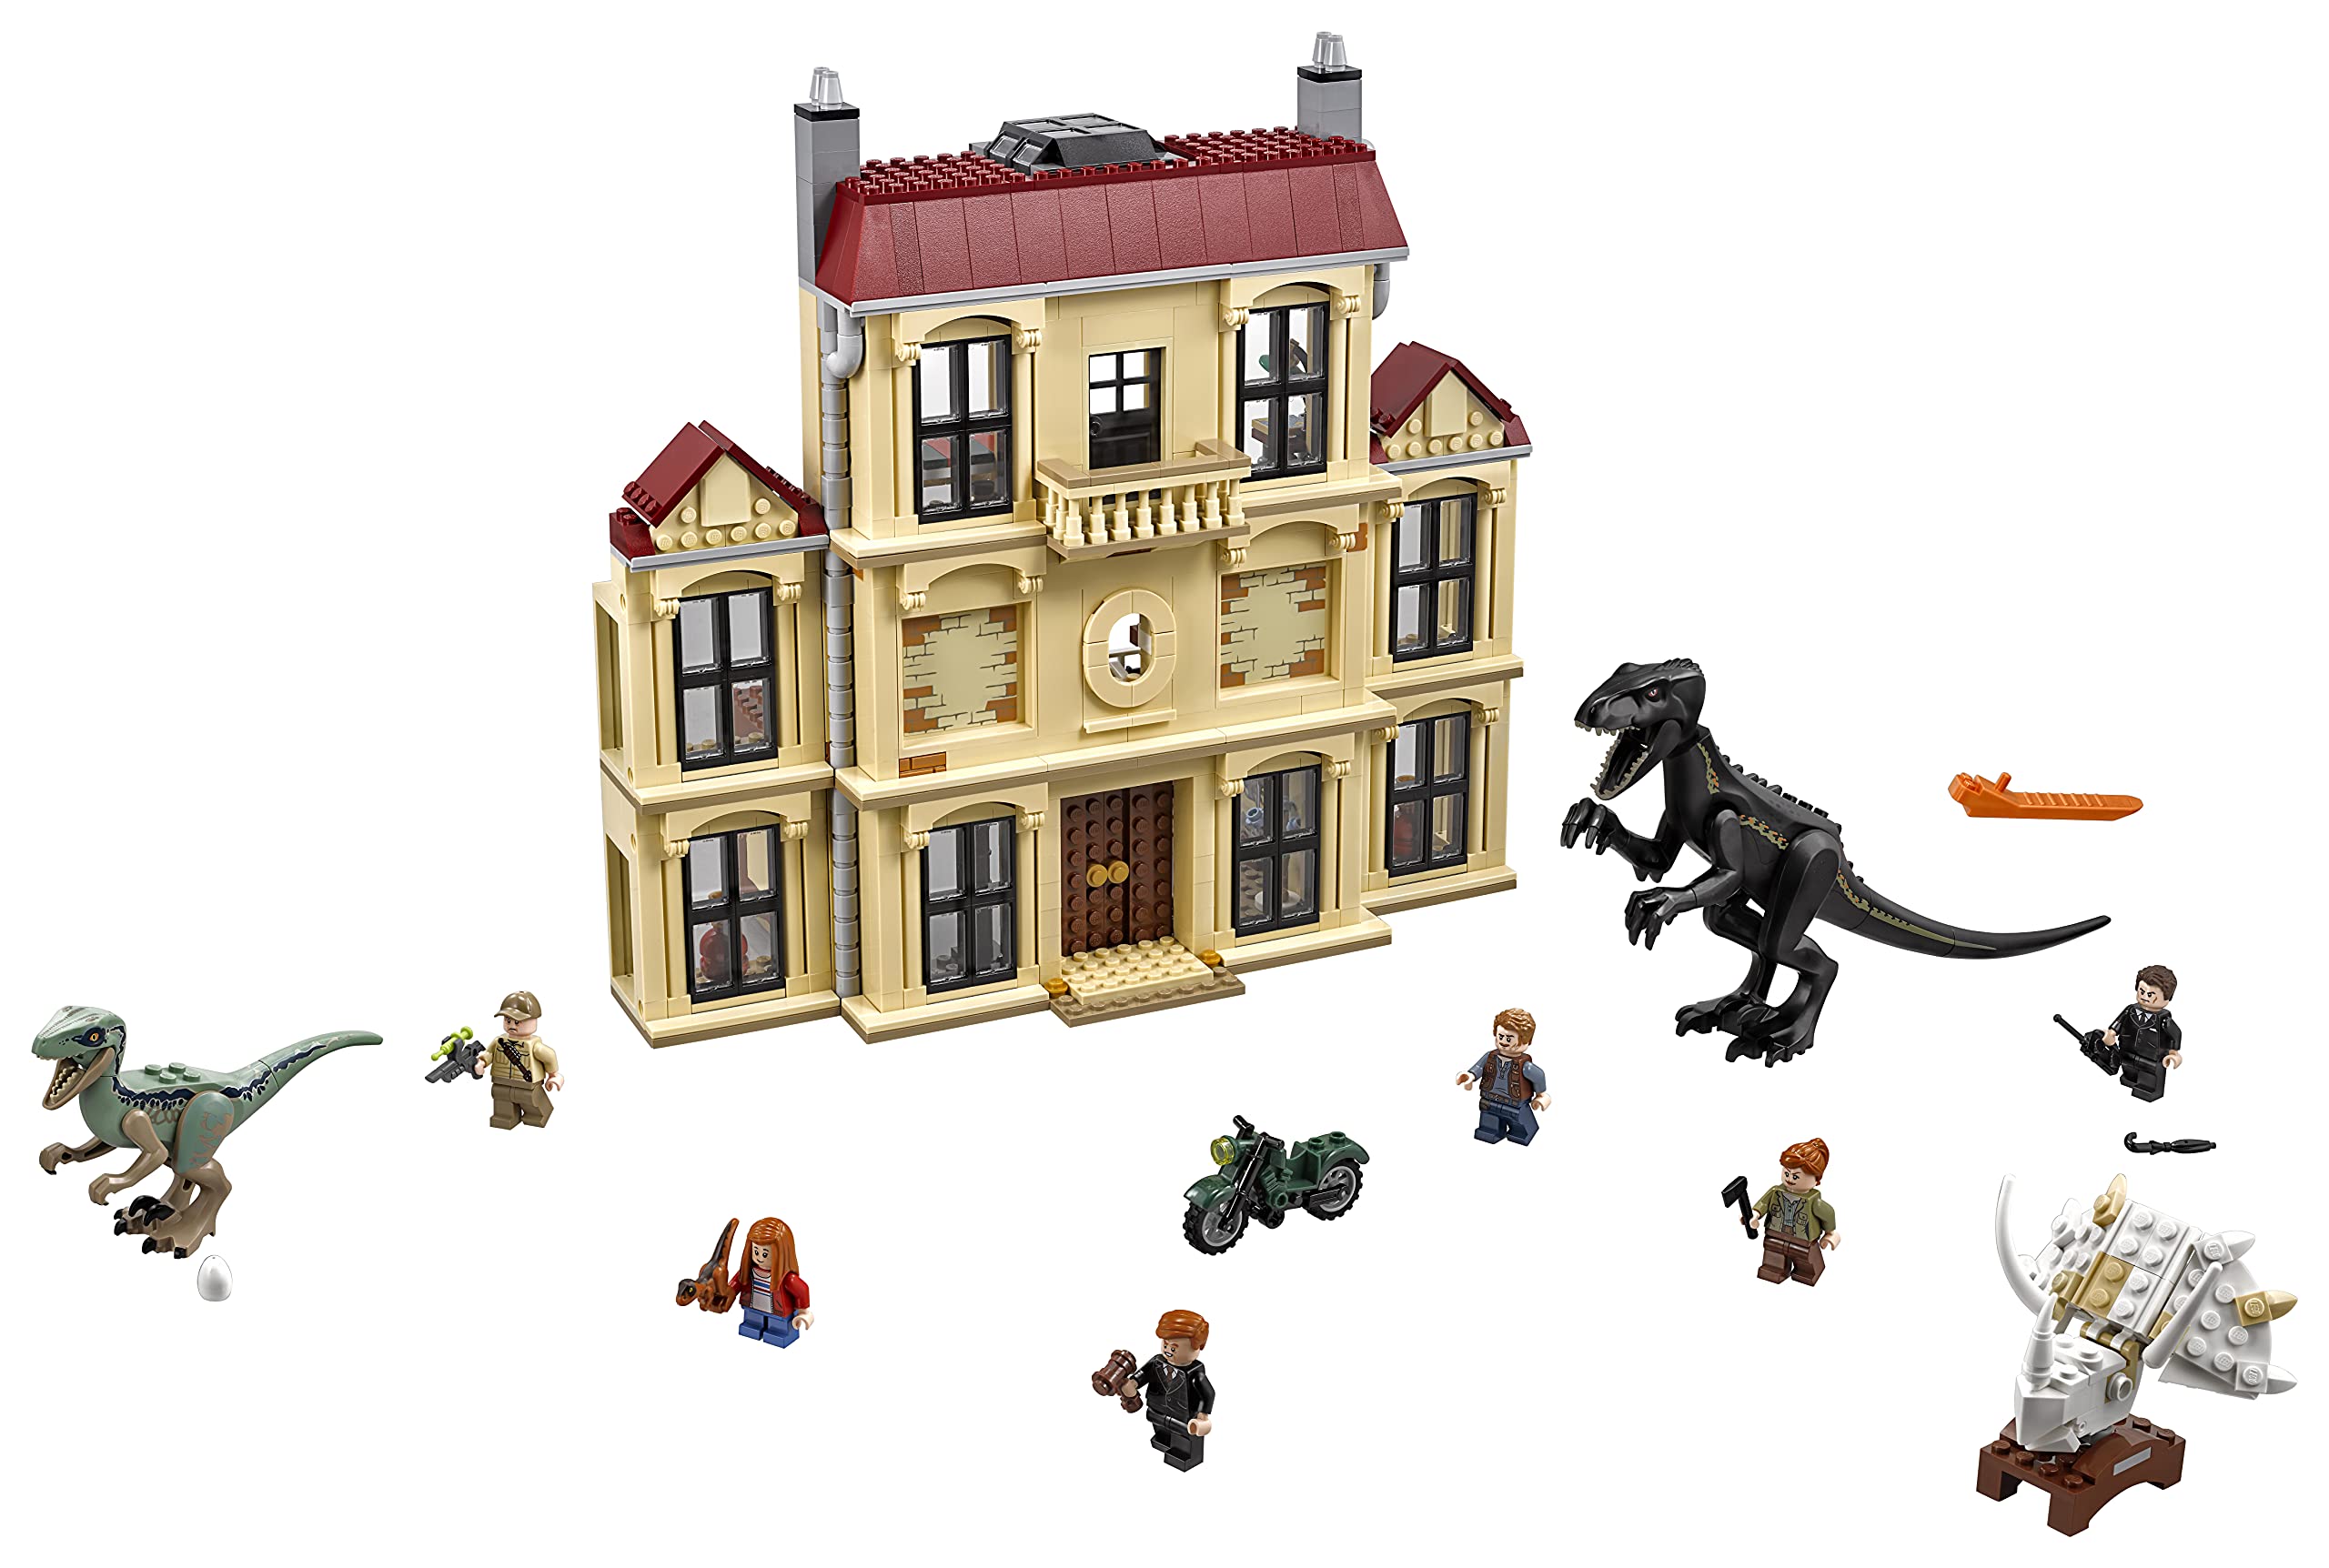 Lego Jurassic World's Indoraptor Verwüstung Lockw – Structure 75930 Toy for Boys & Girls